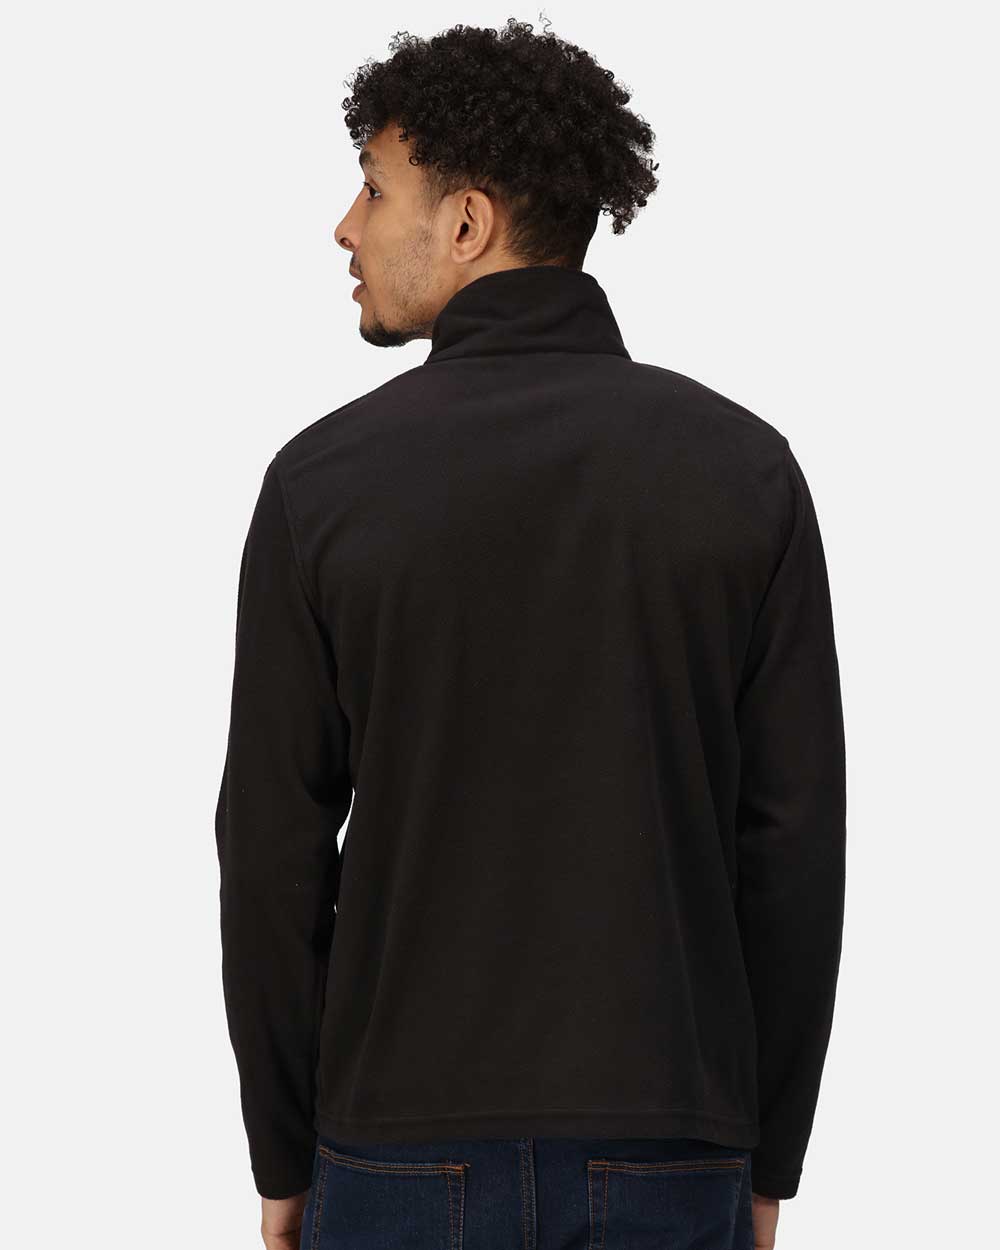 Regatta Micro Zip Neck Fleece in Black 